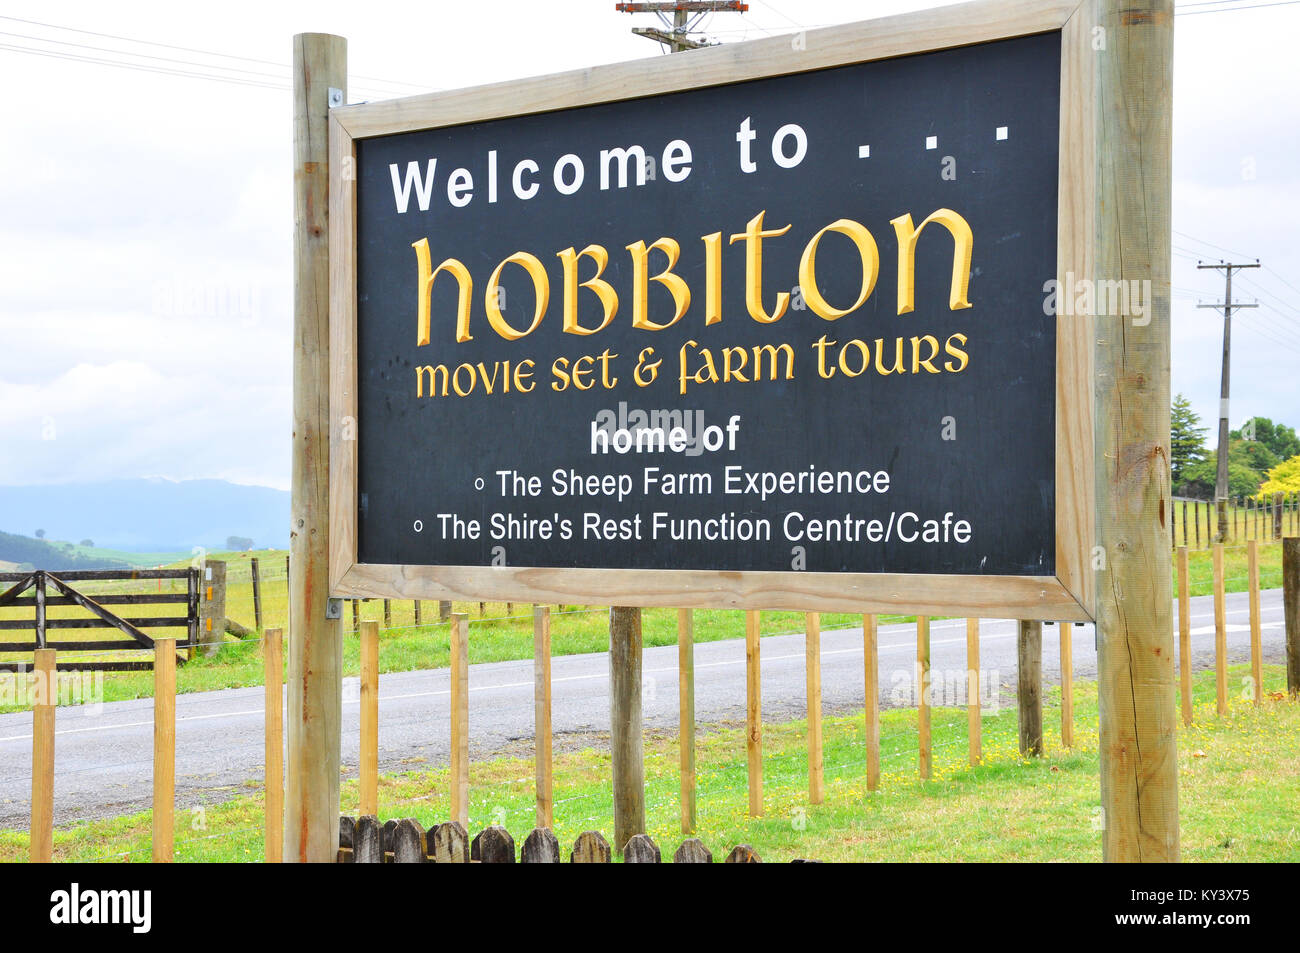 Hobbiton movie set Besucherattraktion in Ackerland in der Nähe von matamata Neuseeland. Visitor Center anmelden. Platz für Kopie Stockfoto